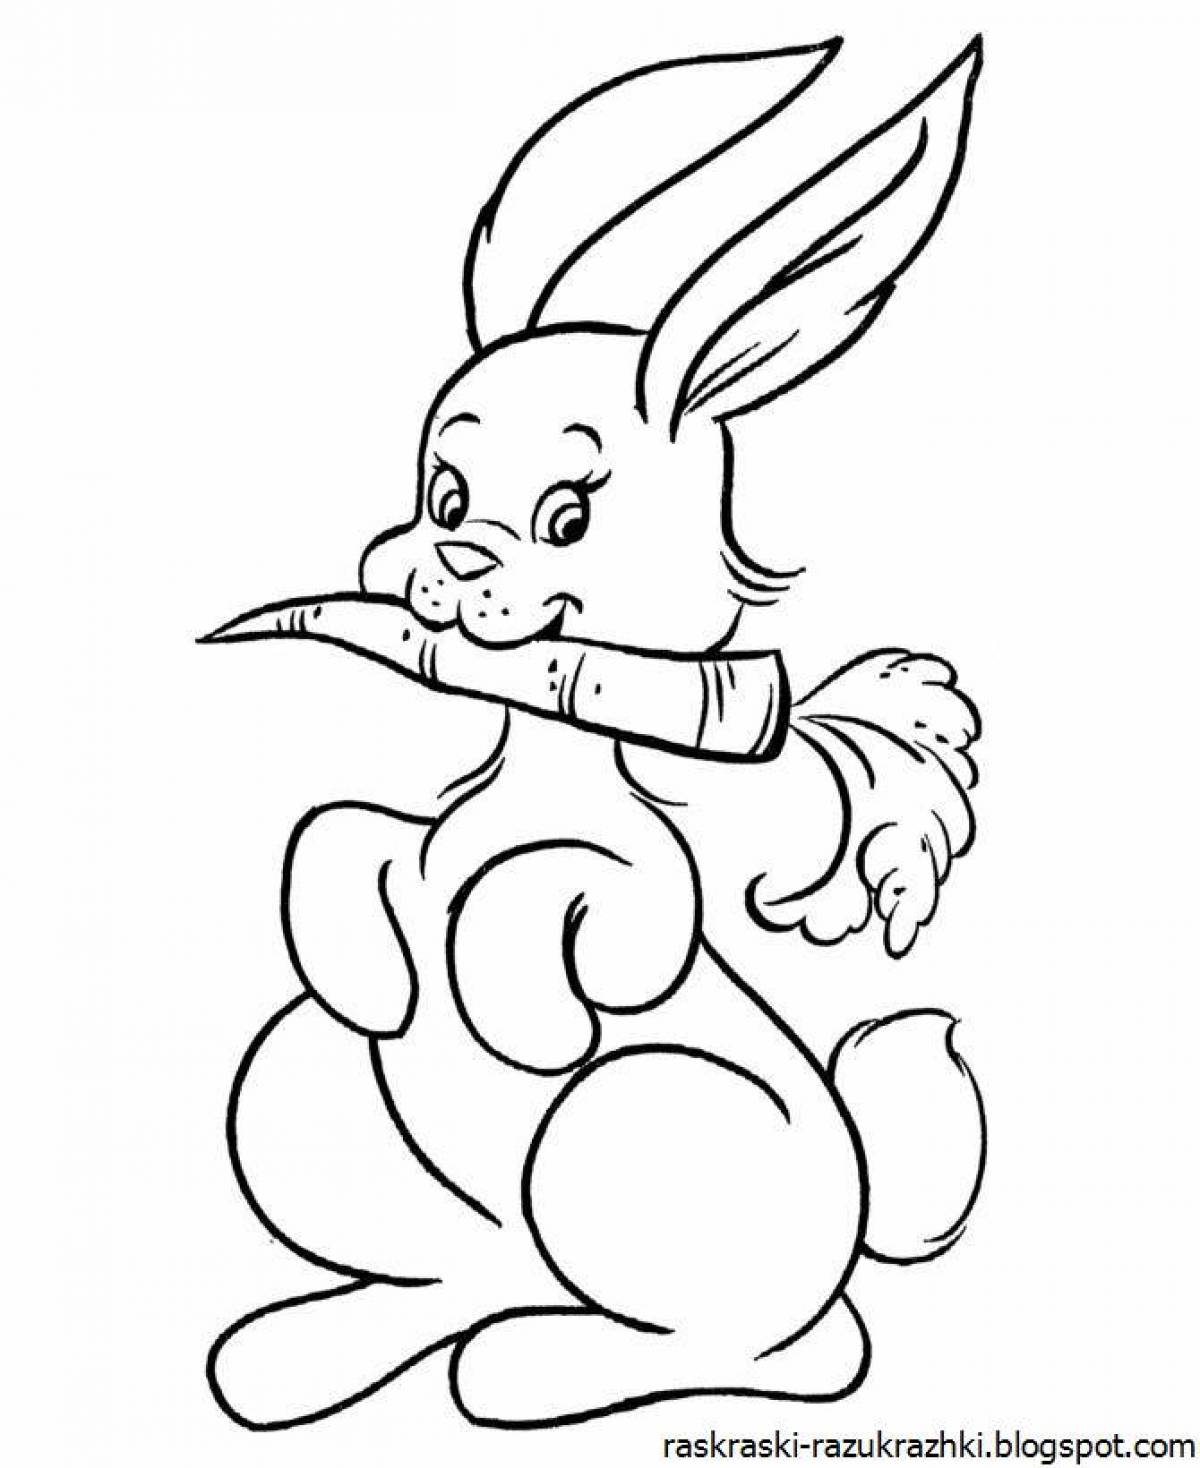 Сладкая раскраска page bunny picture